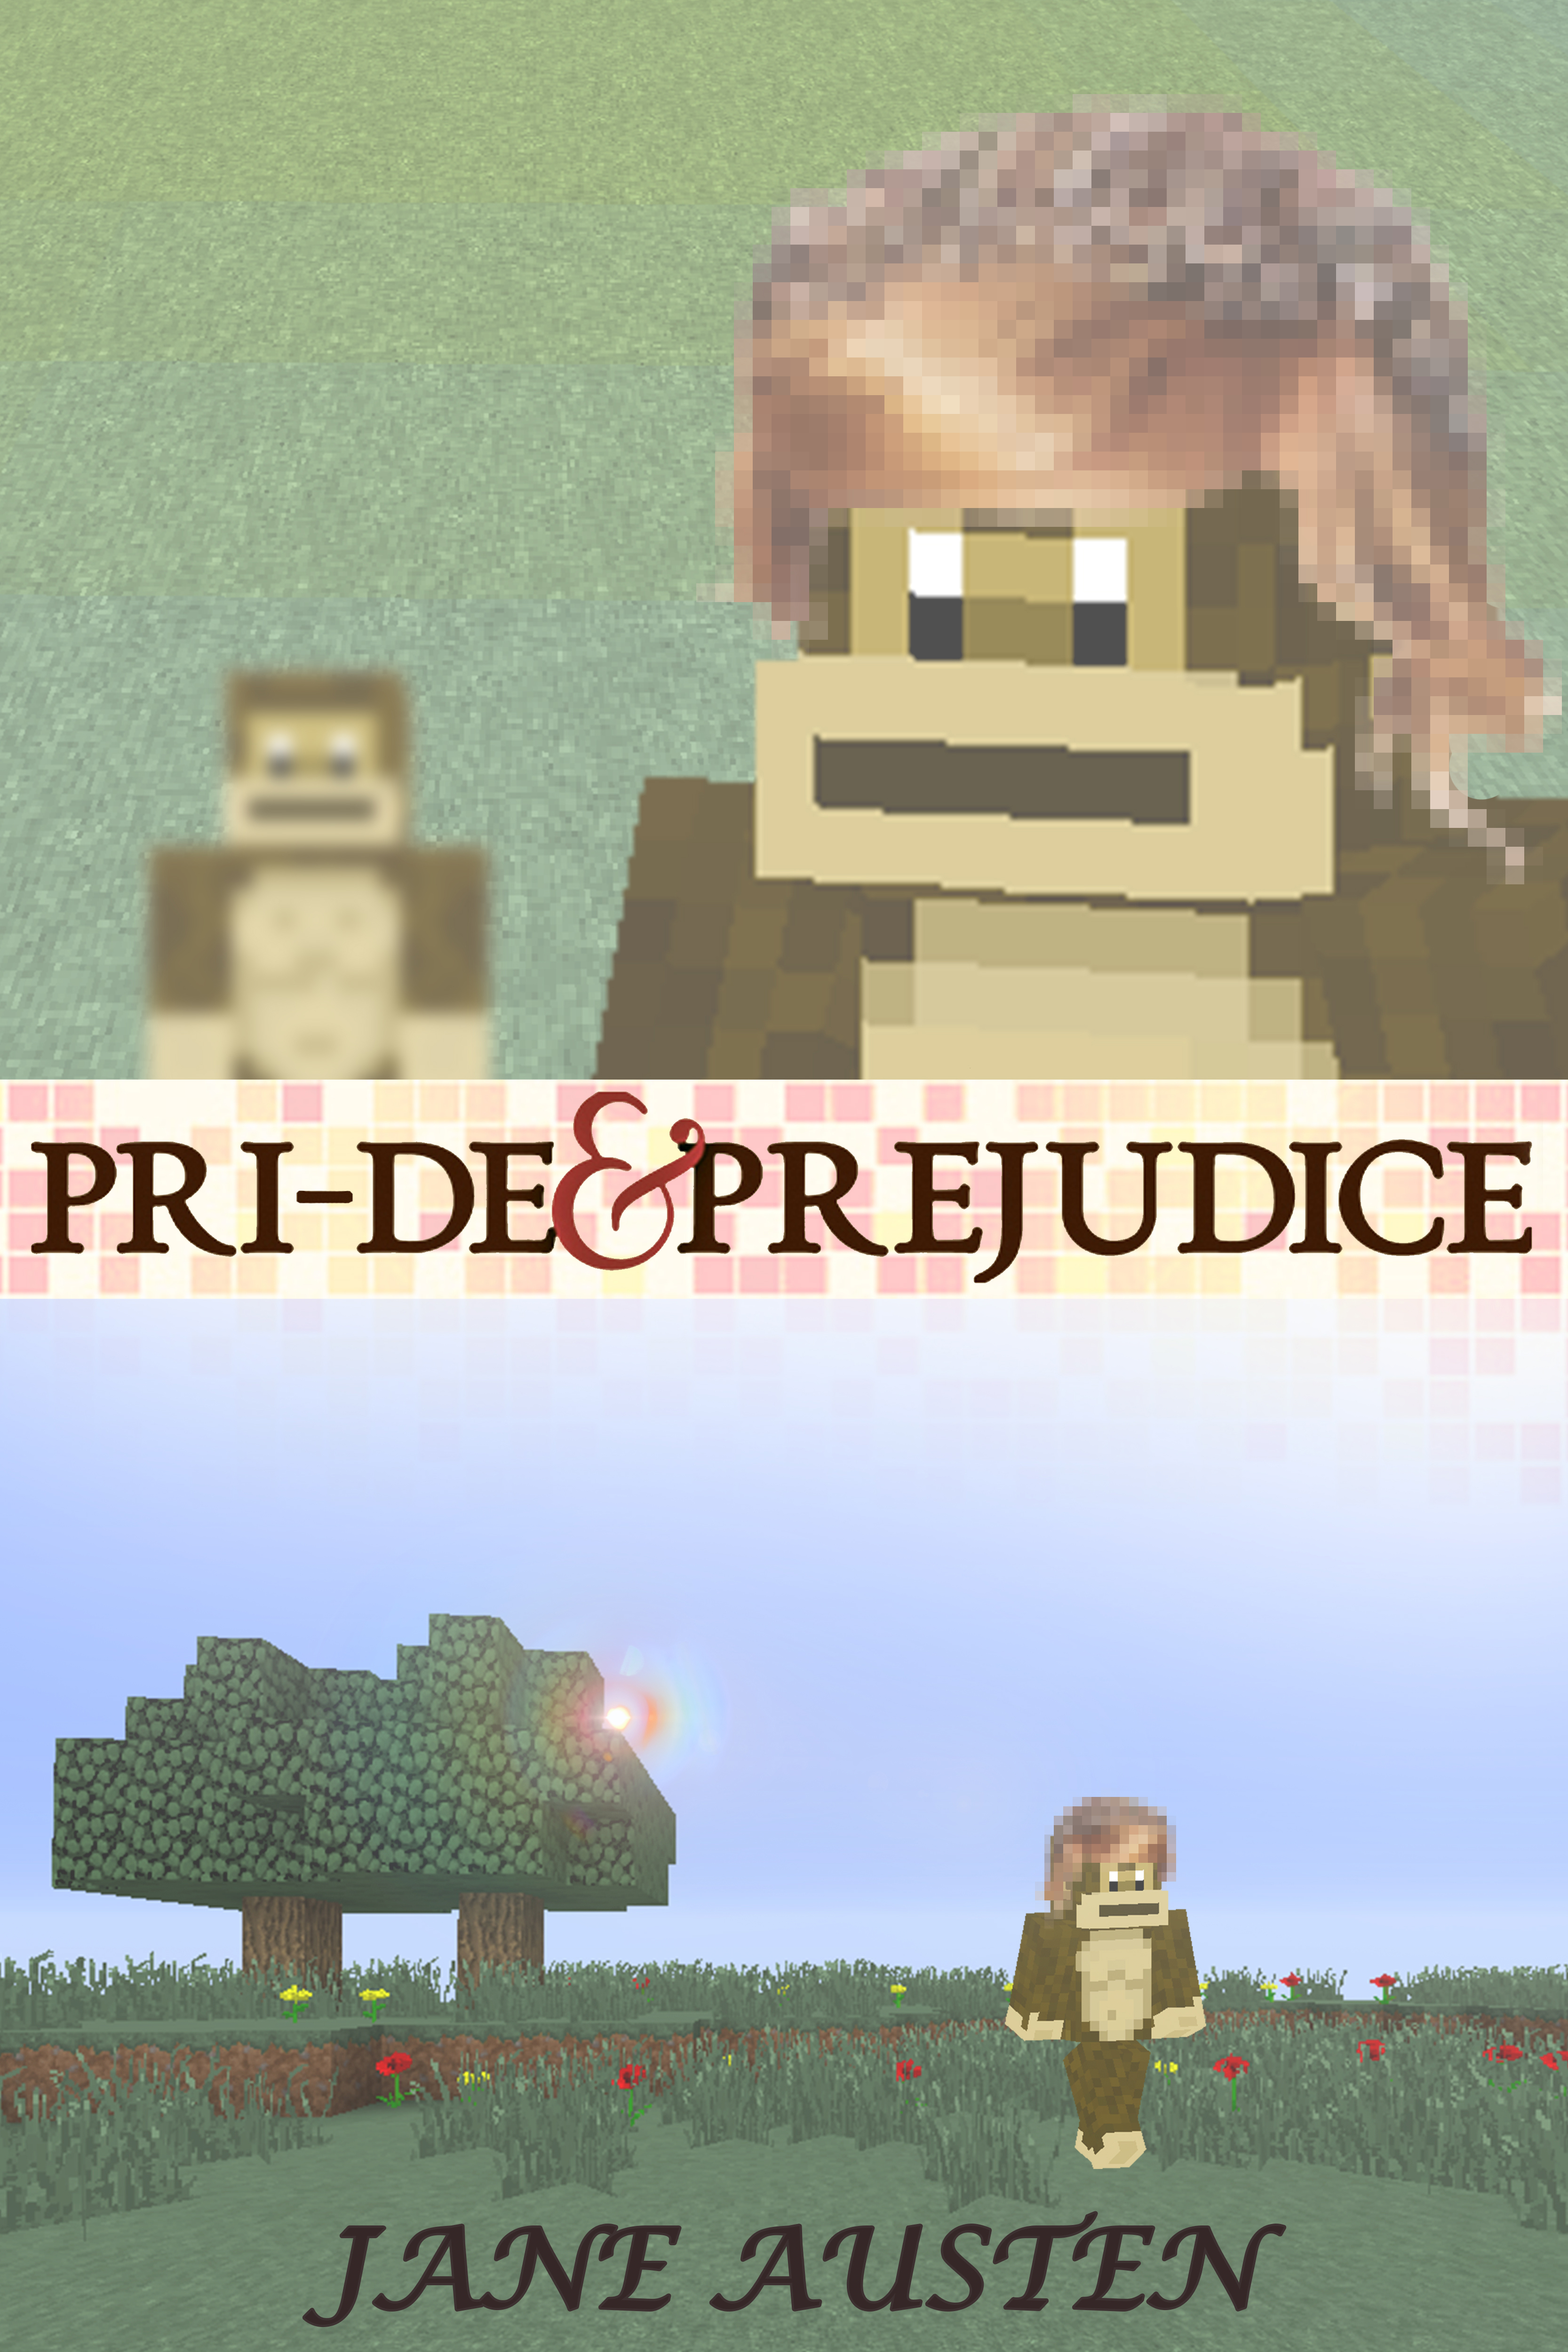 Pri-de and Prejudice.jpg